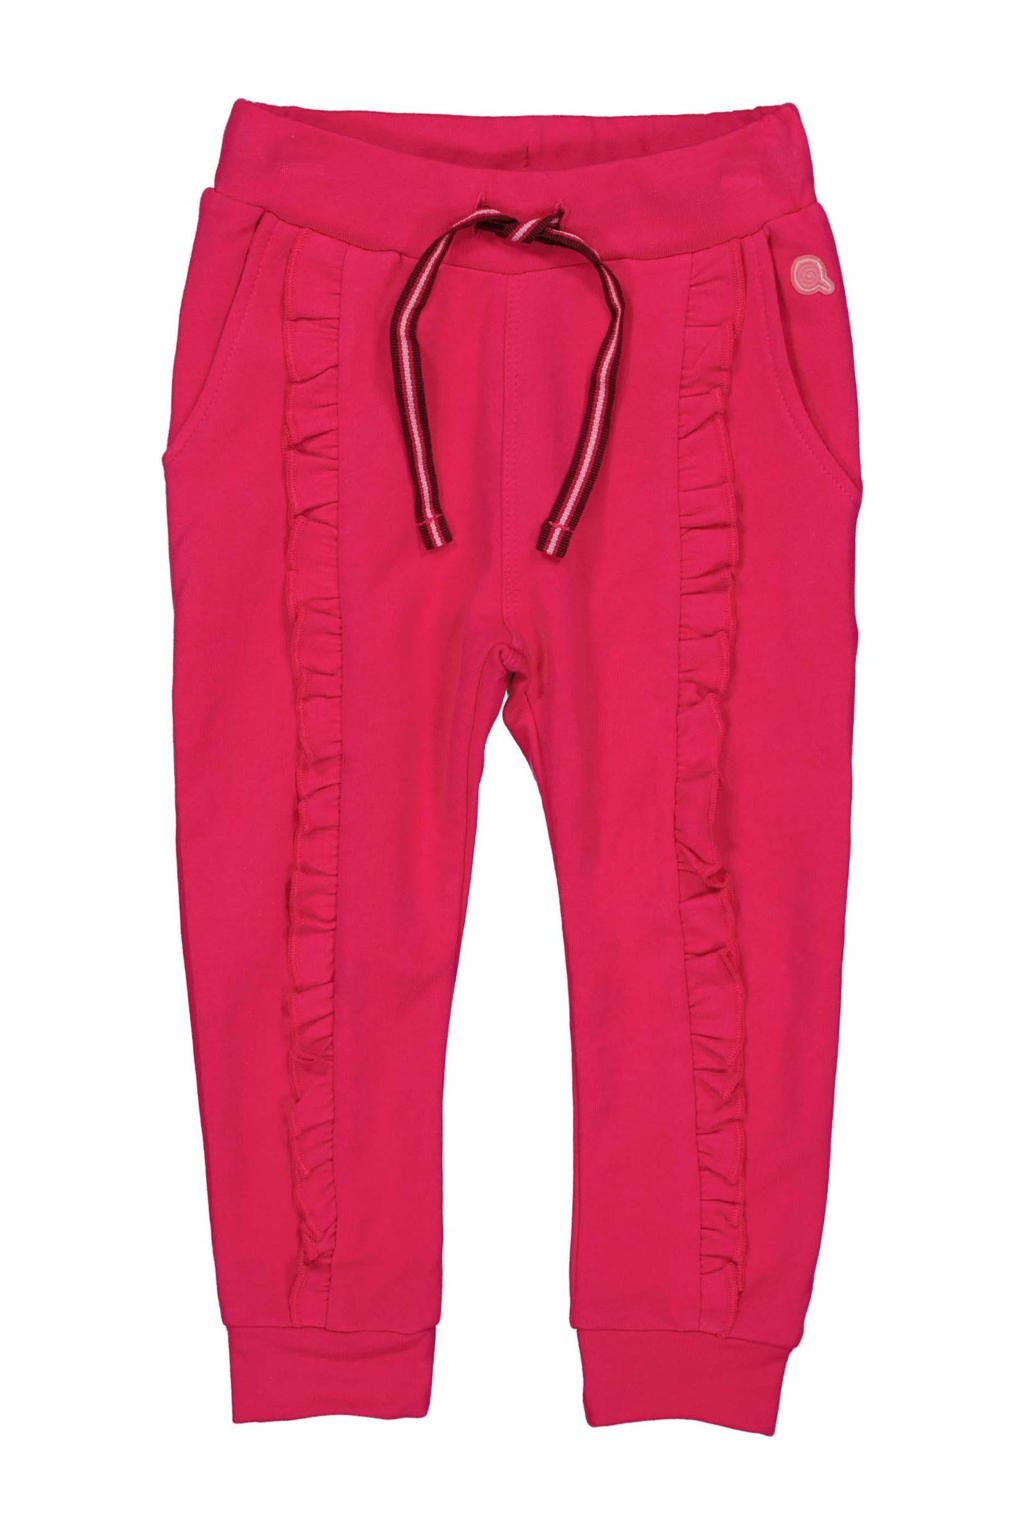 Roze meisjes Quapi Mini regular fit broek Nique van sweat materiaal met elastische tailleband met koord